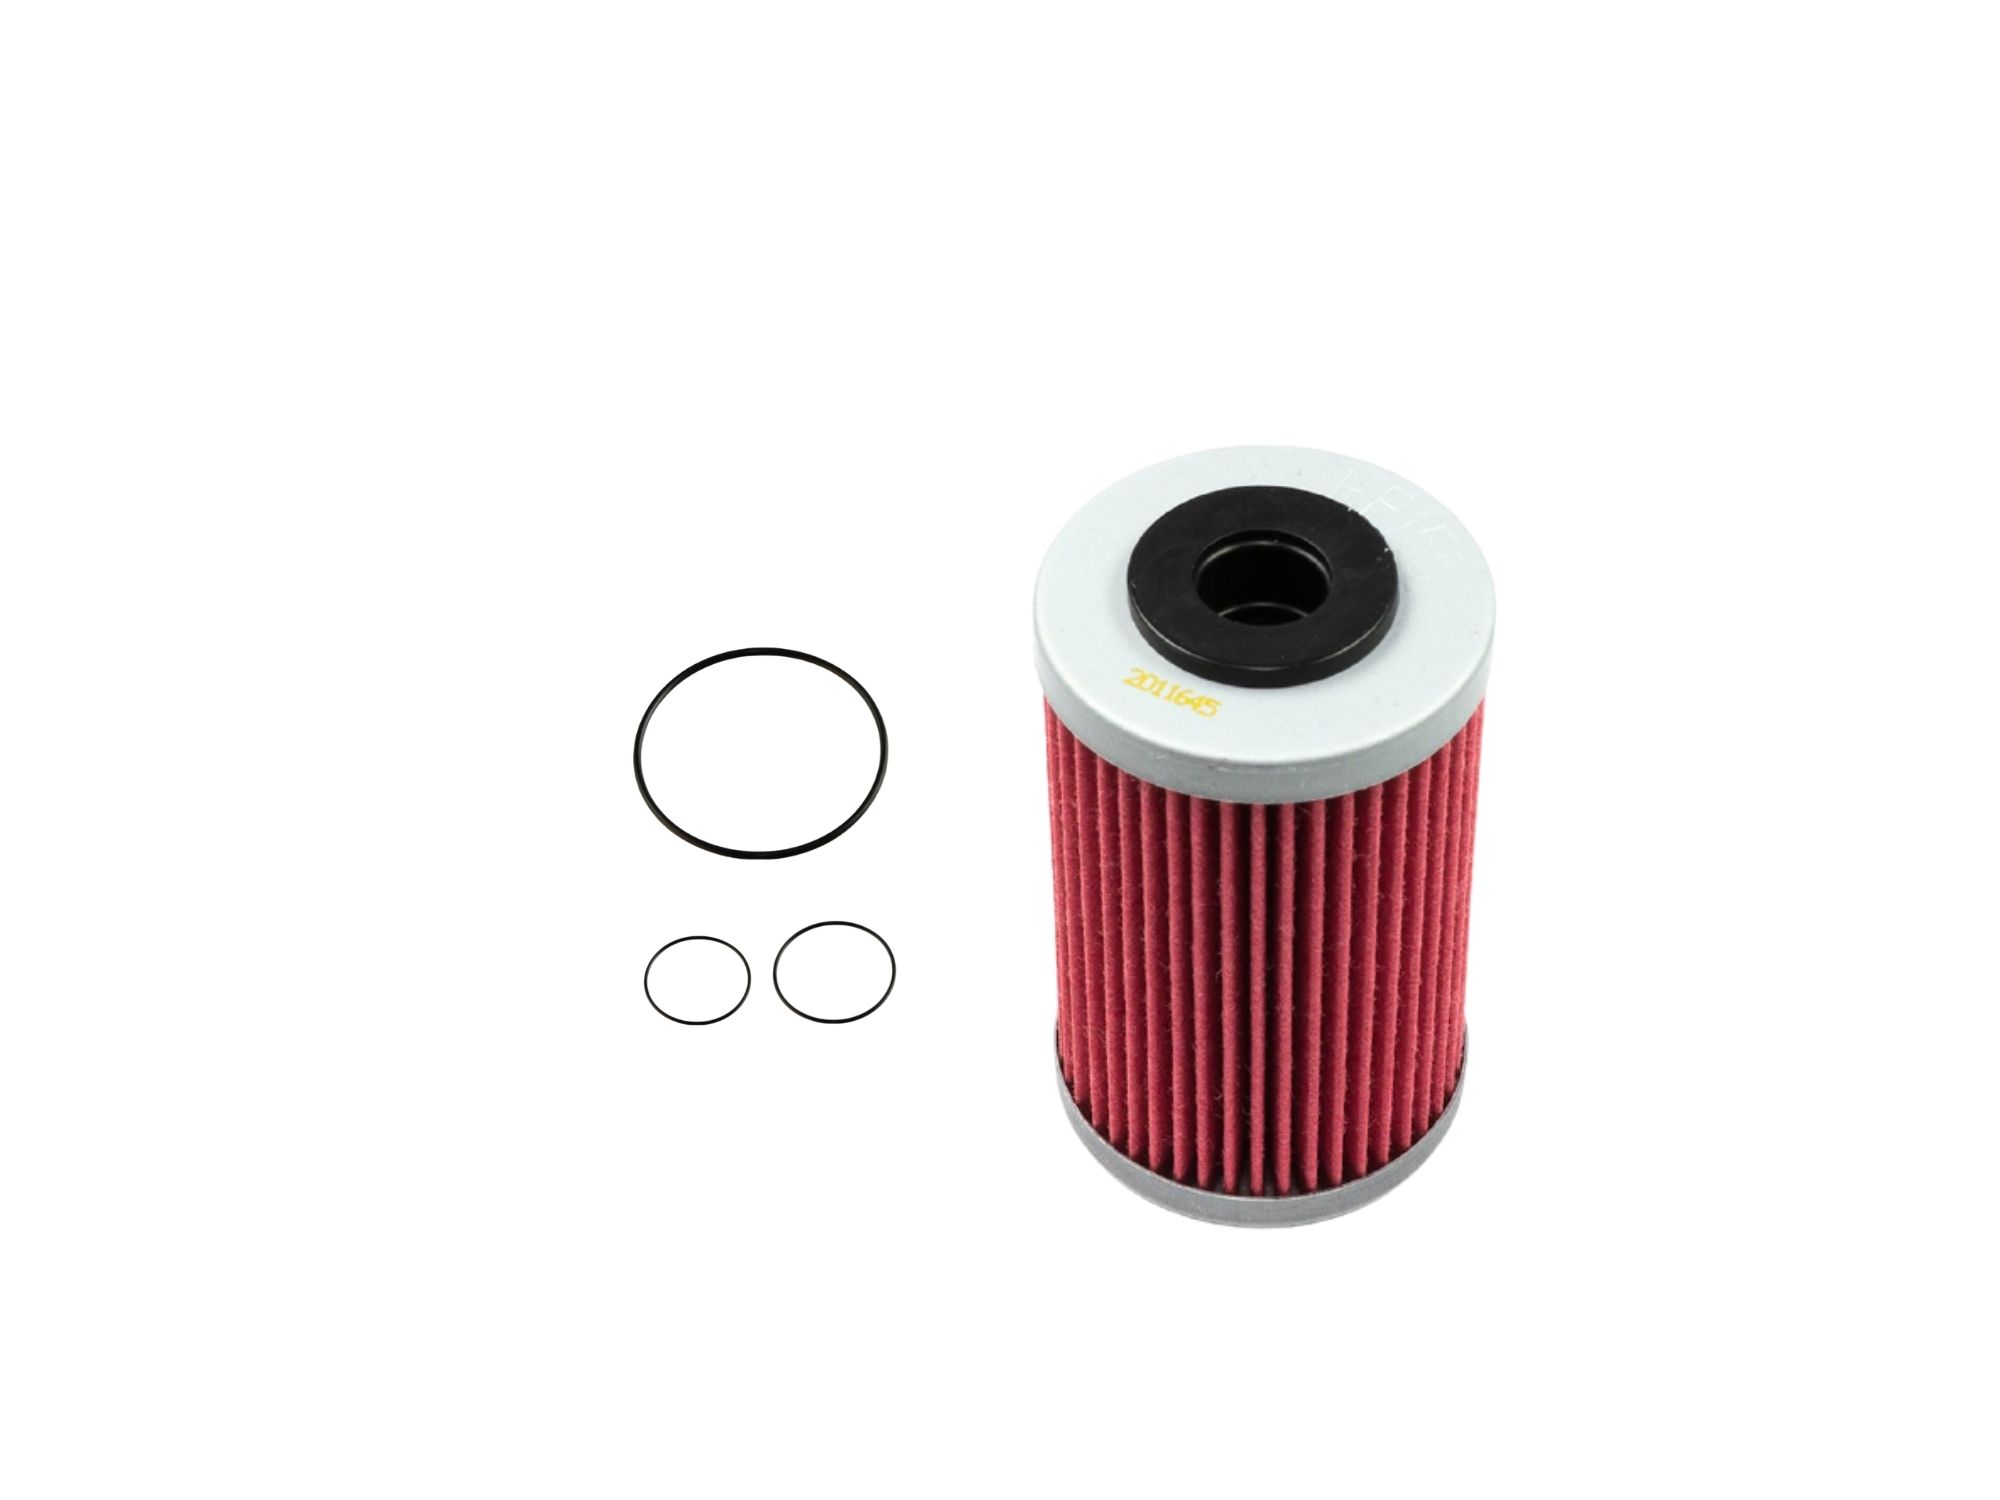 Oil filter kit suitable for KTM 125 Duke 11-24